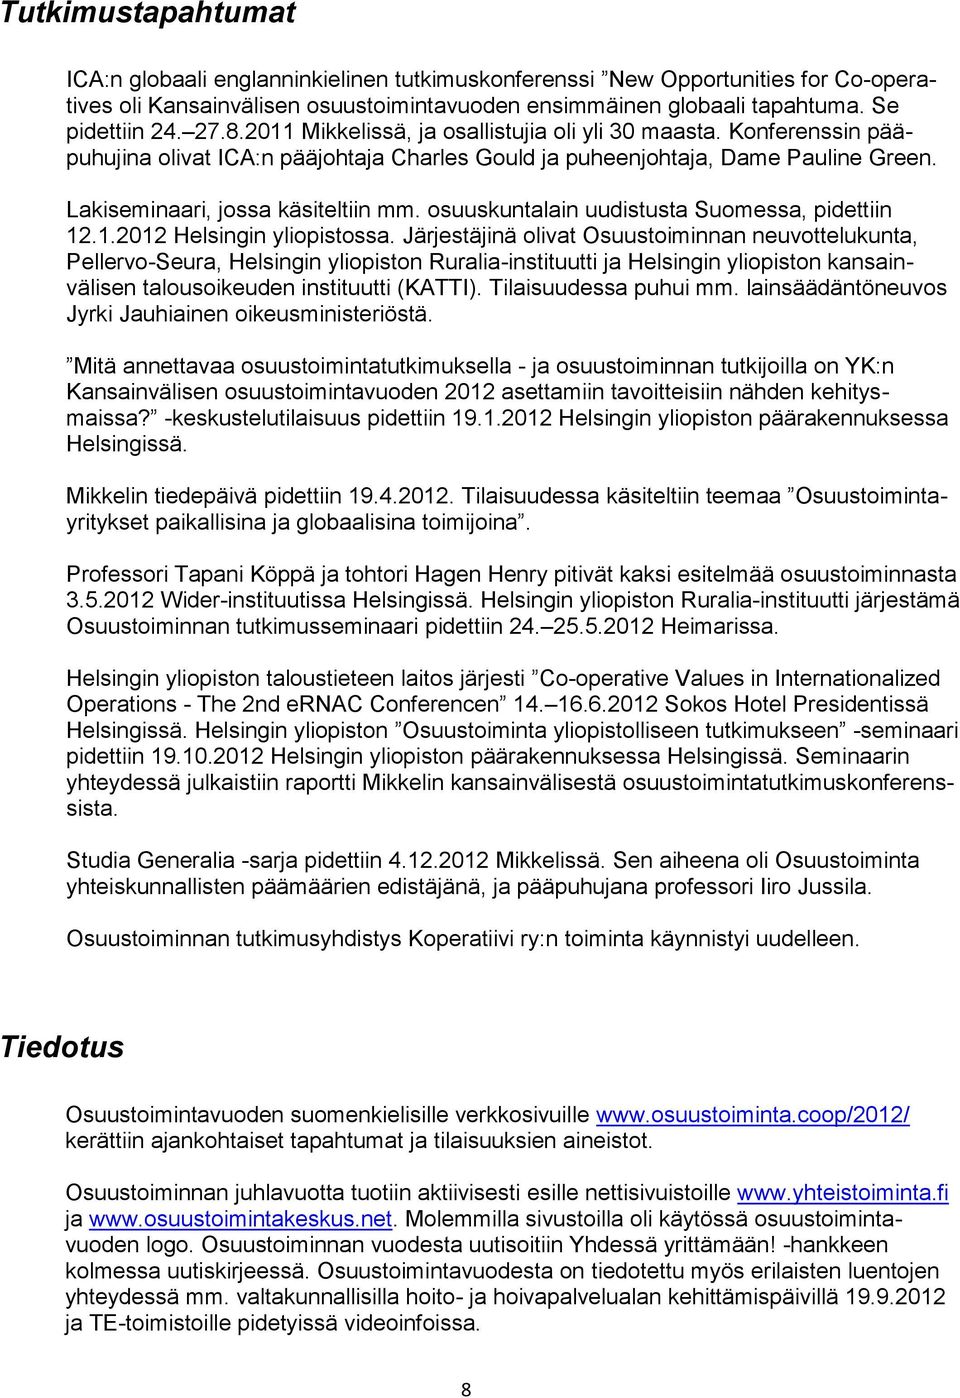 osuuskuntalain uudistusta Suomessa, pidettiin 12.1.2012 Helsingin yliopistossa.